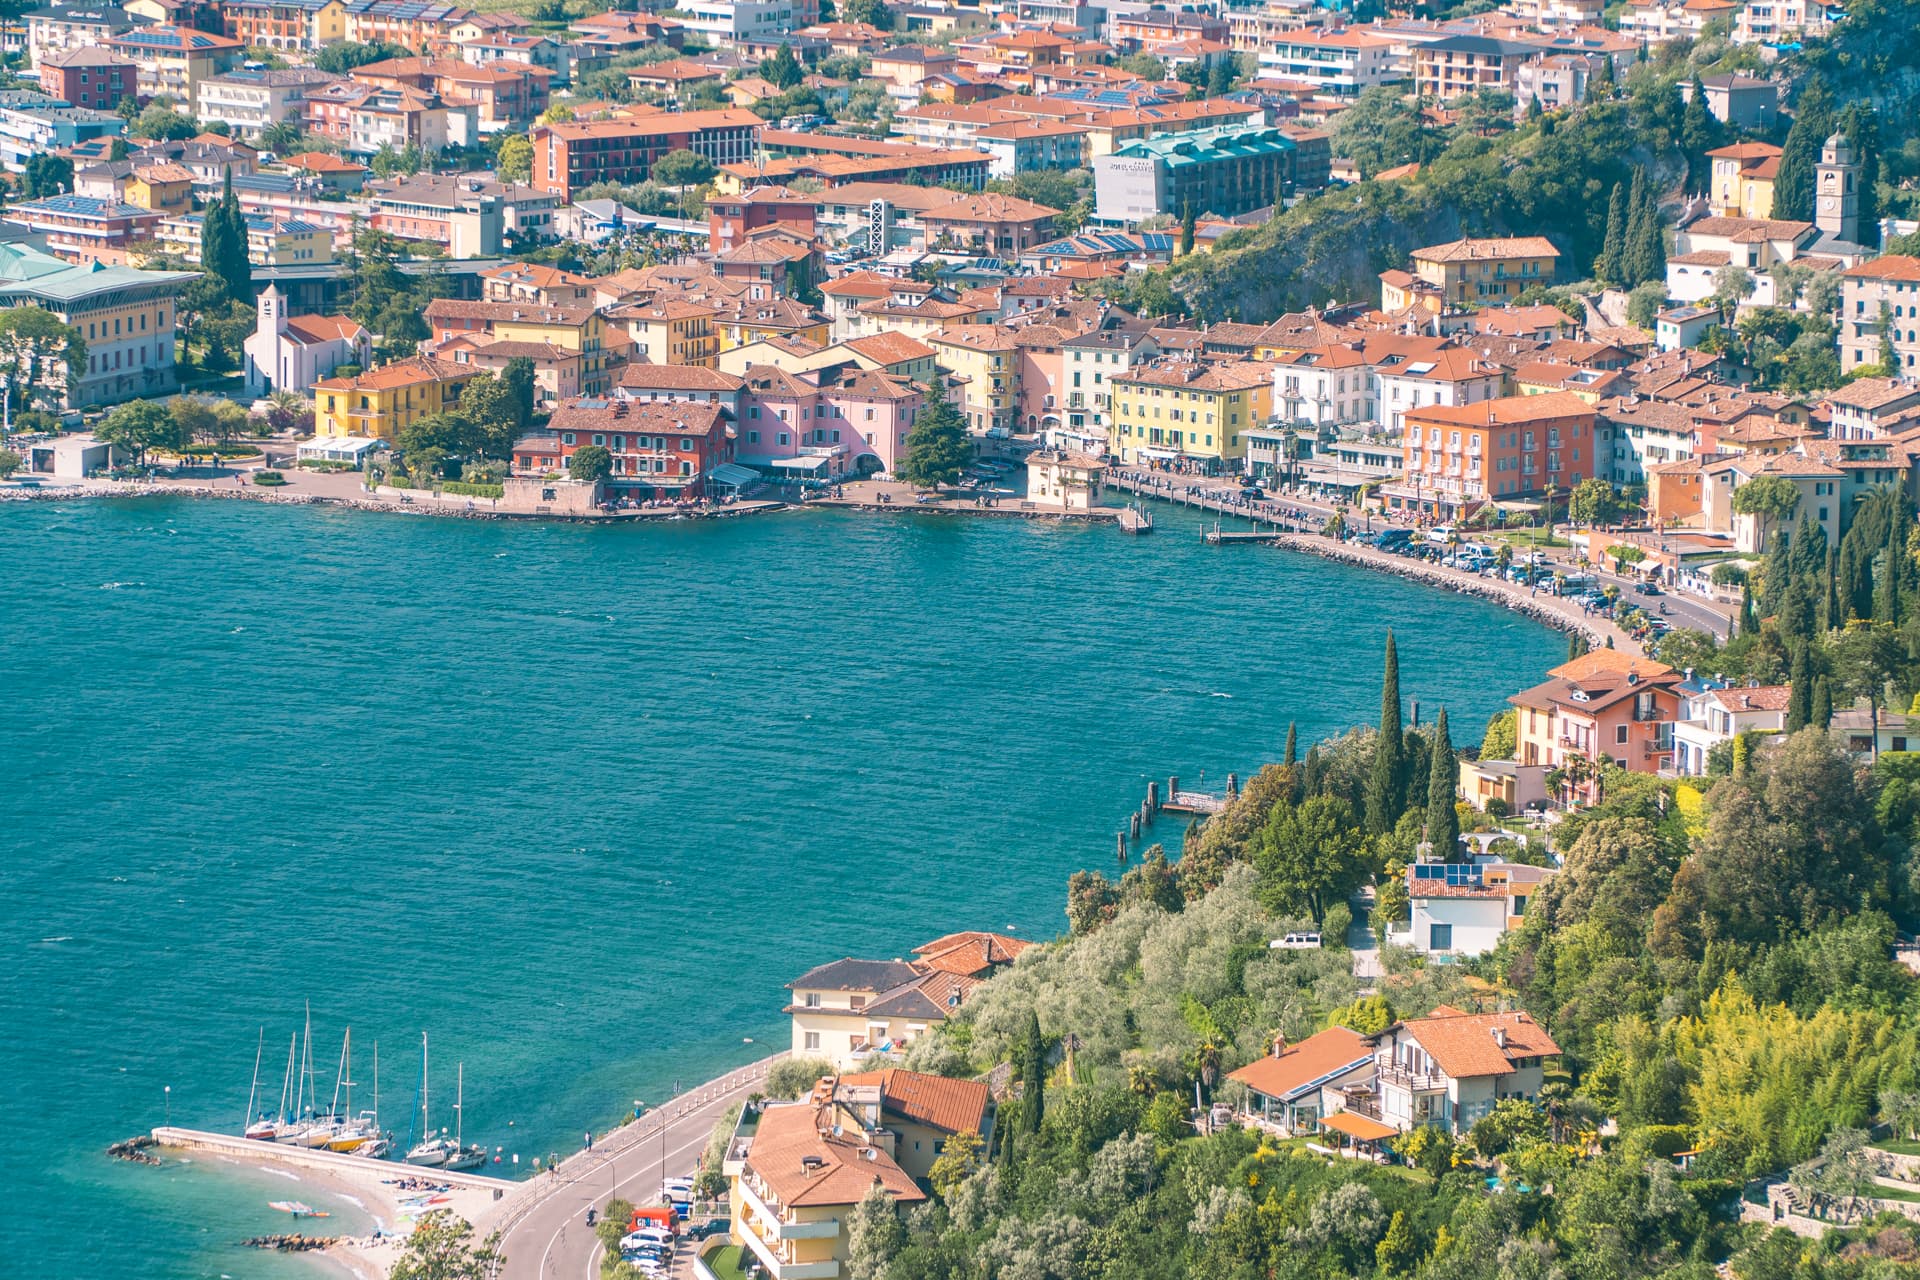 Widok na Torbole | Jak dostać się nad Jezioro Garda ? 